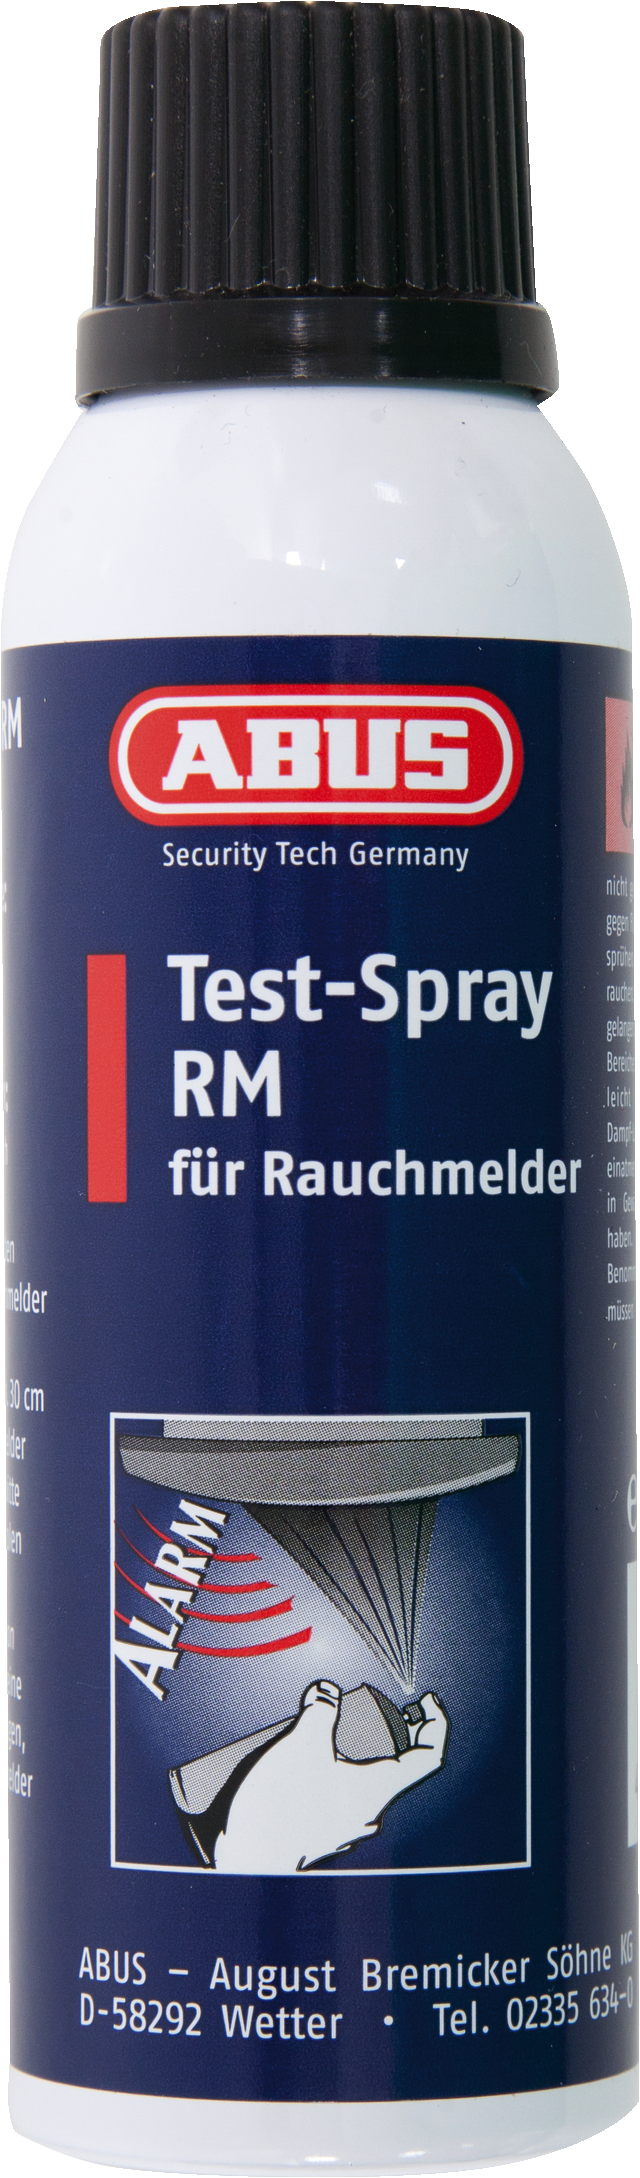 Test-Spray RM 125